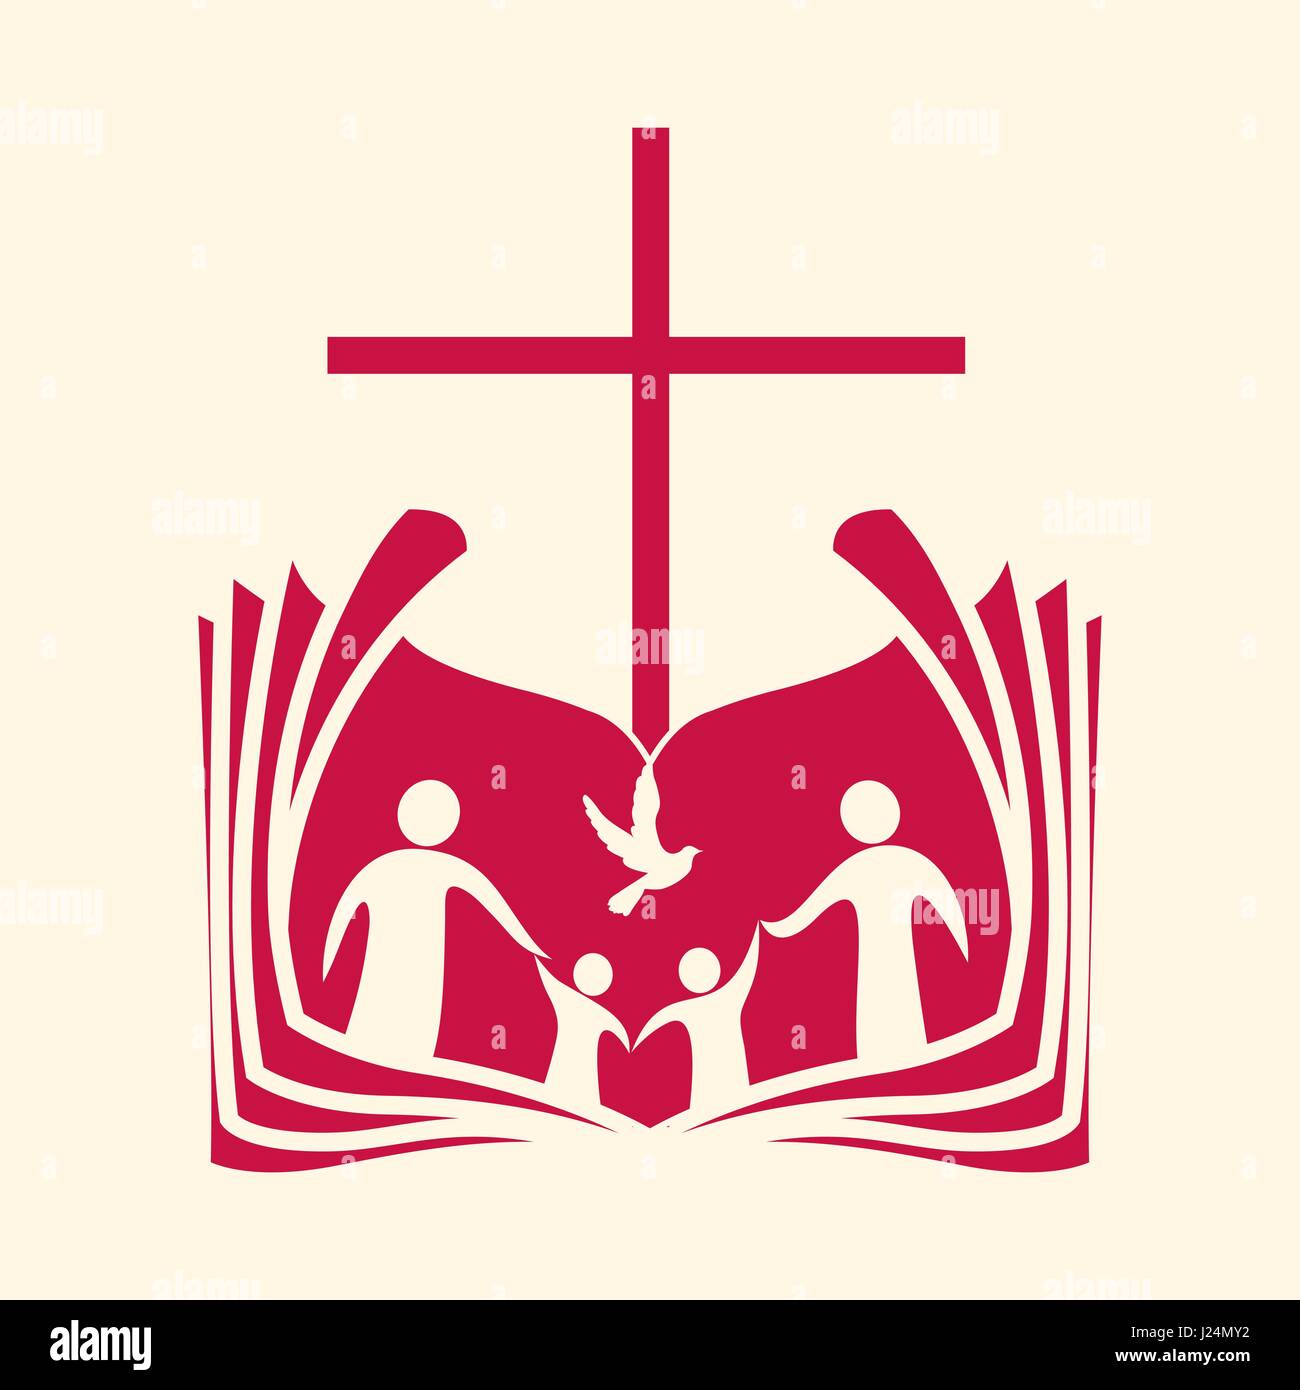 christian symbol for family